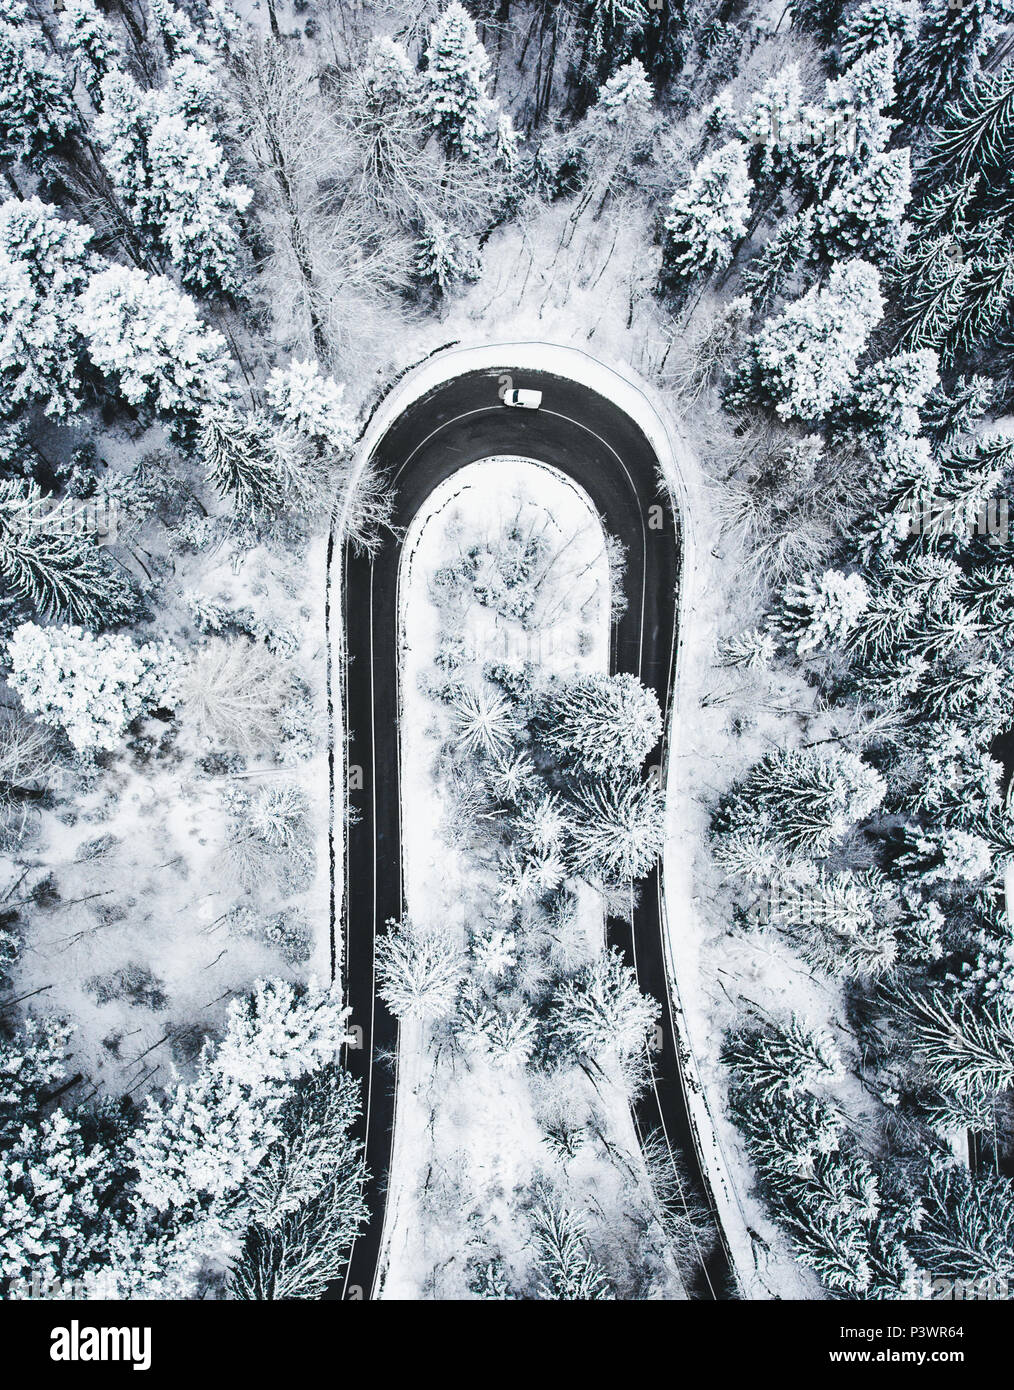 Weißes Auto vorbei auf eine extreme kurvenreiche Straße im Winter Stockfoto